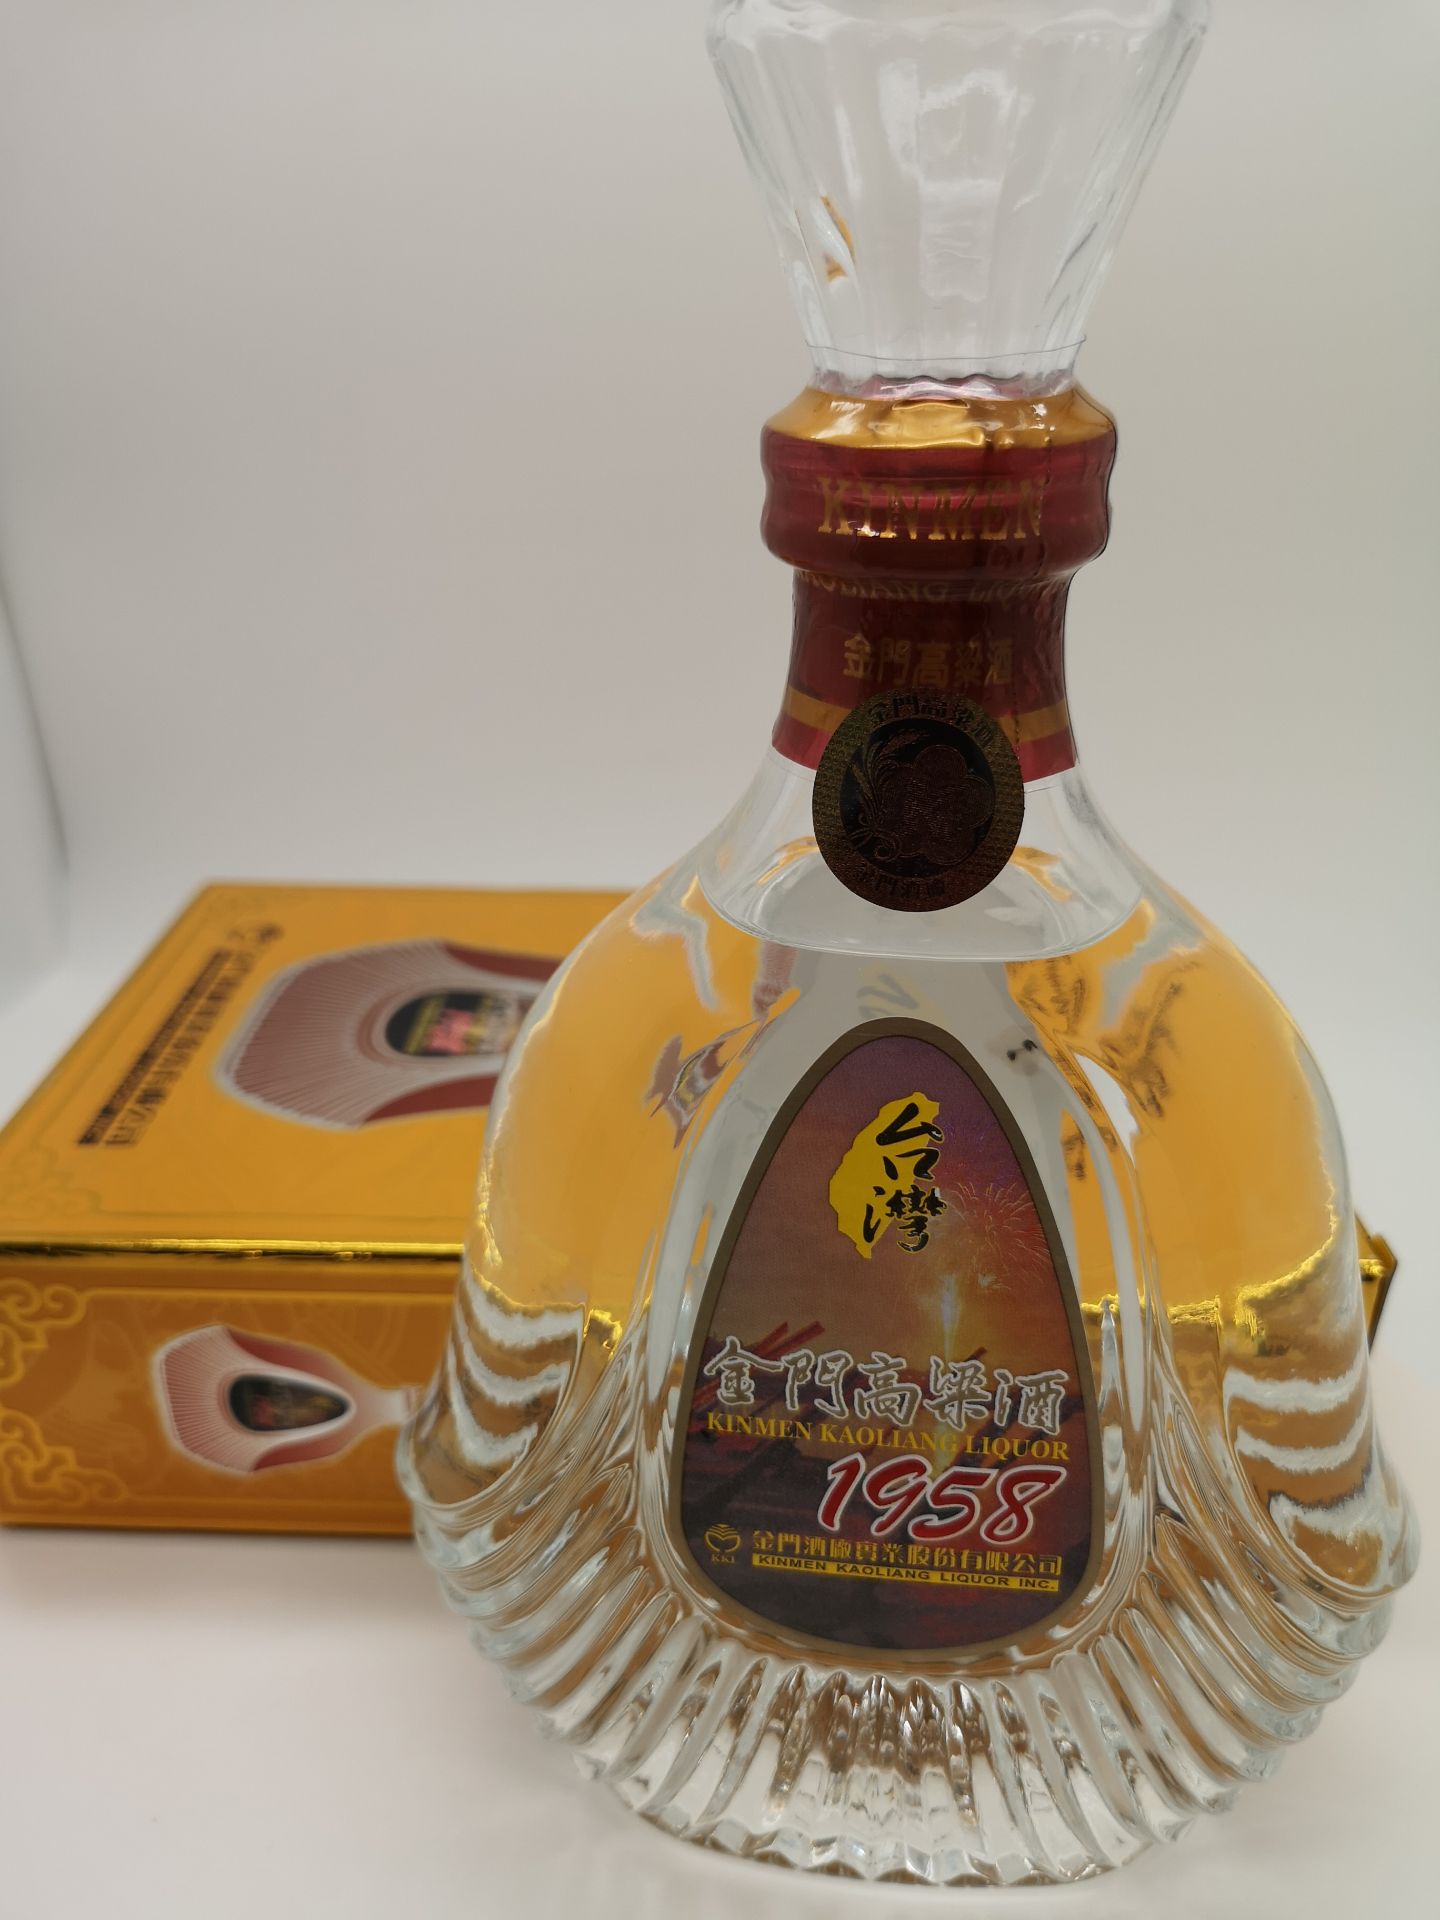 台湾金门高粱酒 1958典藏版53度白酒送礼盒装